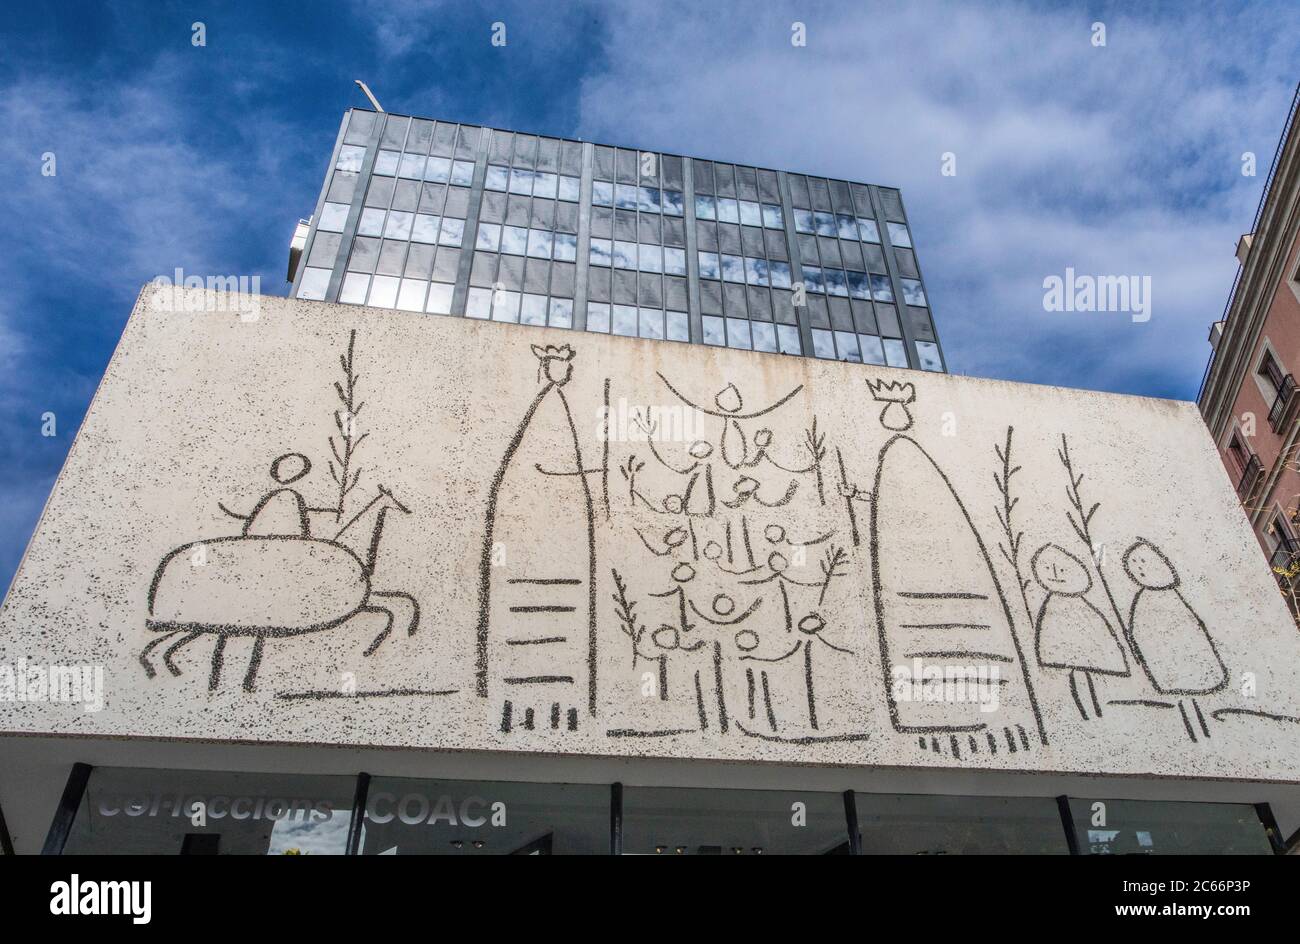 La ville de Barcelone, Ciutat Vella, Picasso murale, Espagne Banque D'Images